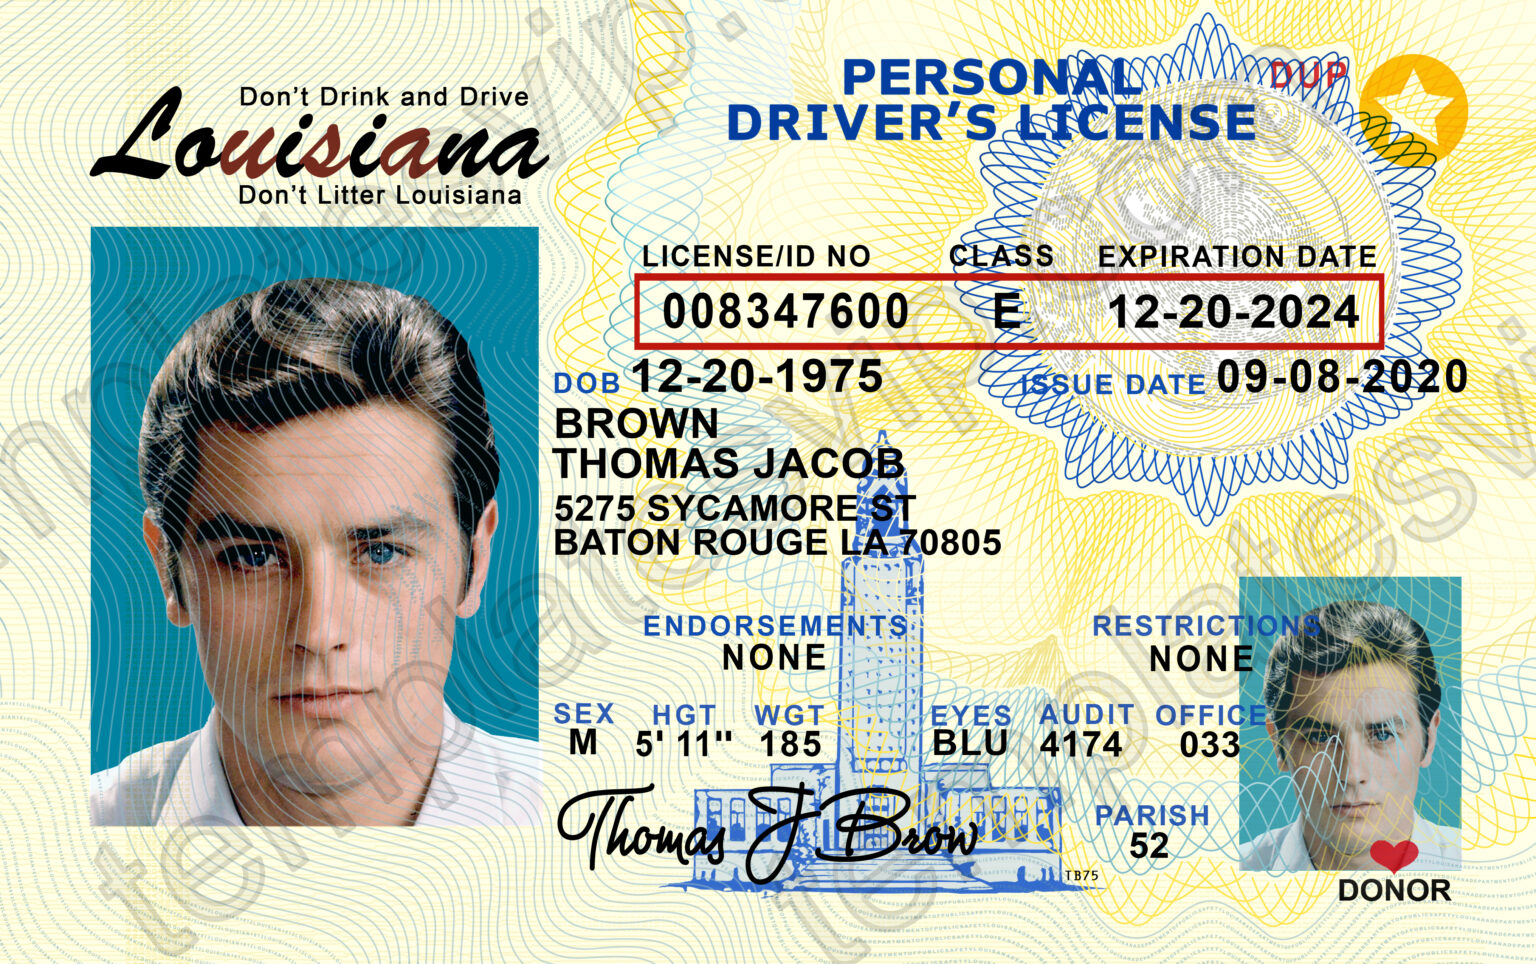 louisiana-la-driver-s-license-psd-template-download-templates